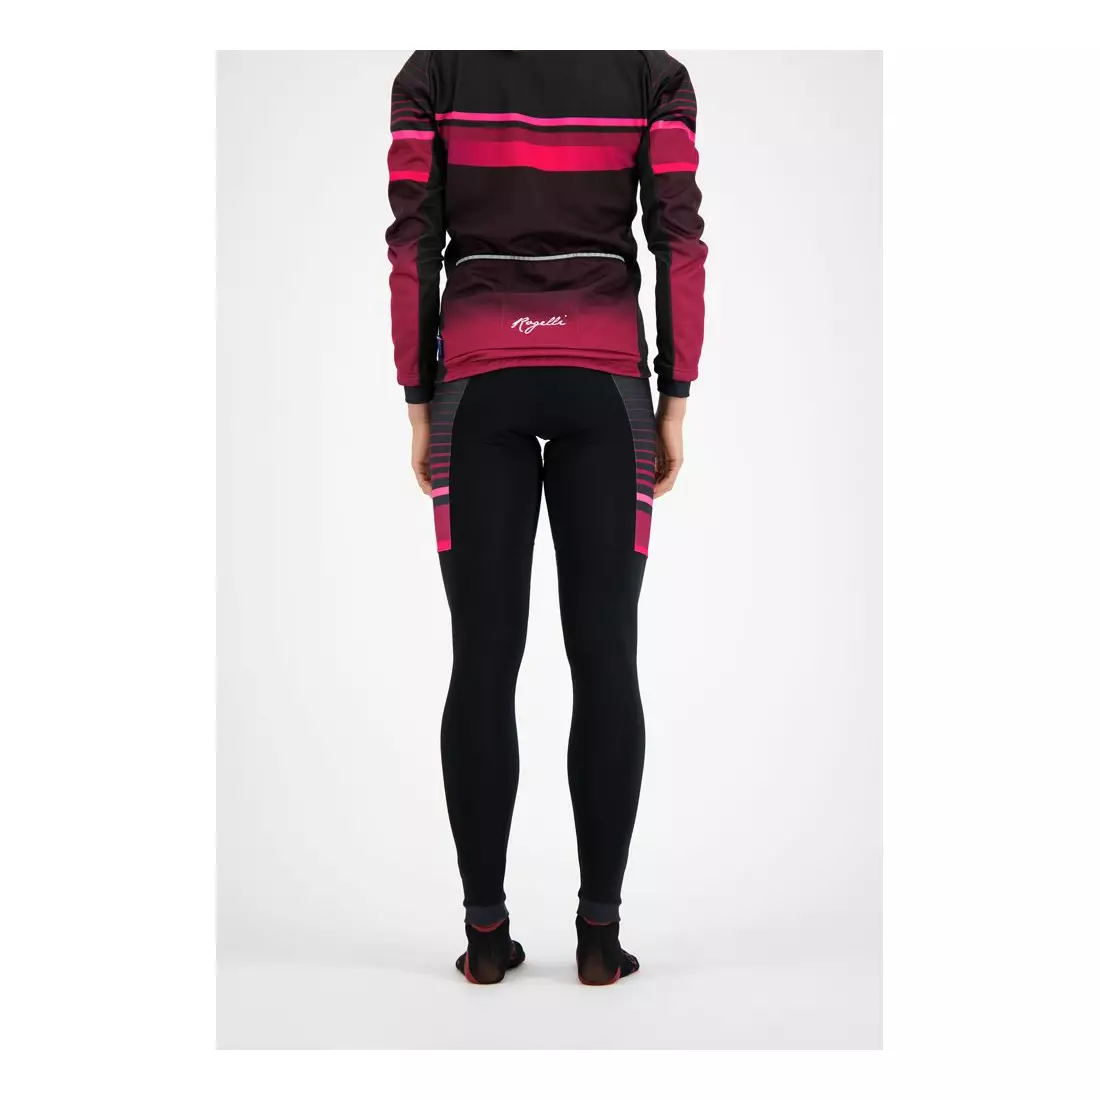 ROGELLI Damen Winter Radhose mit Hosenträgern IMPRESS black/pink